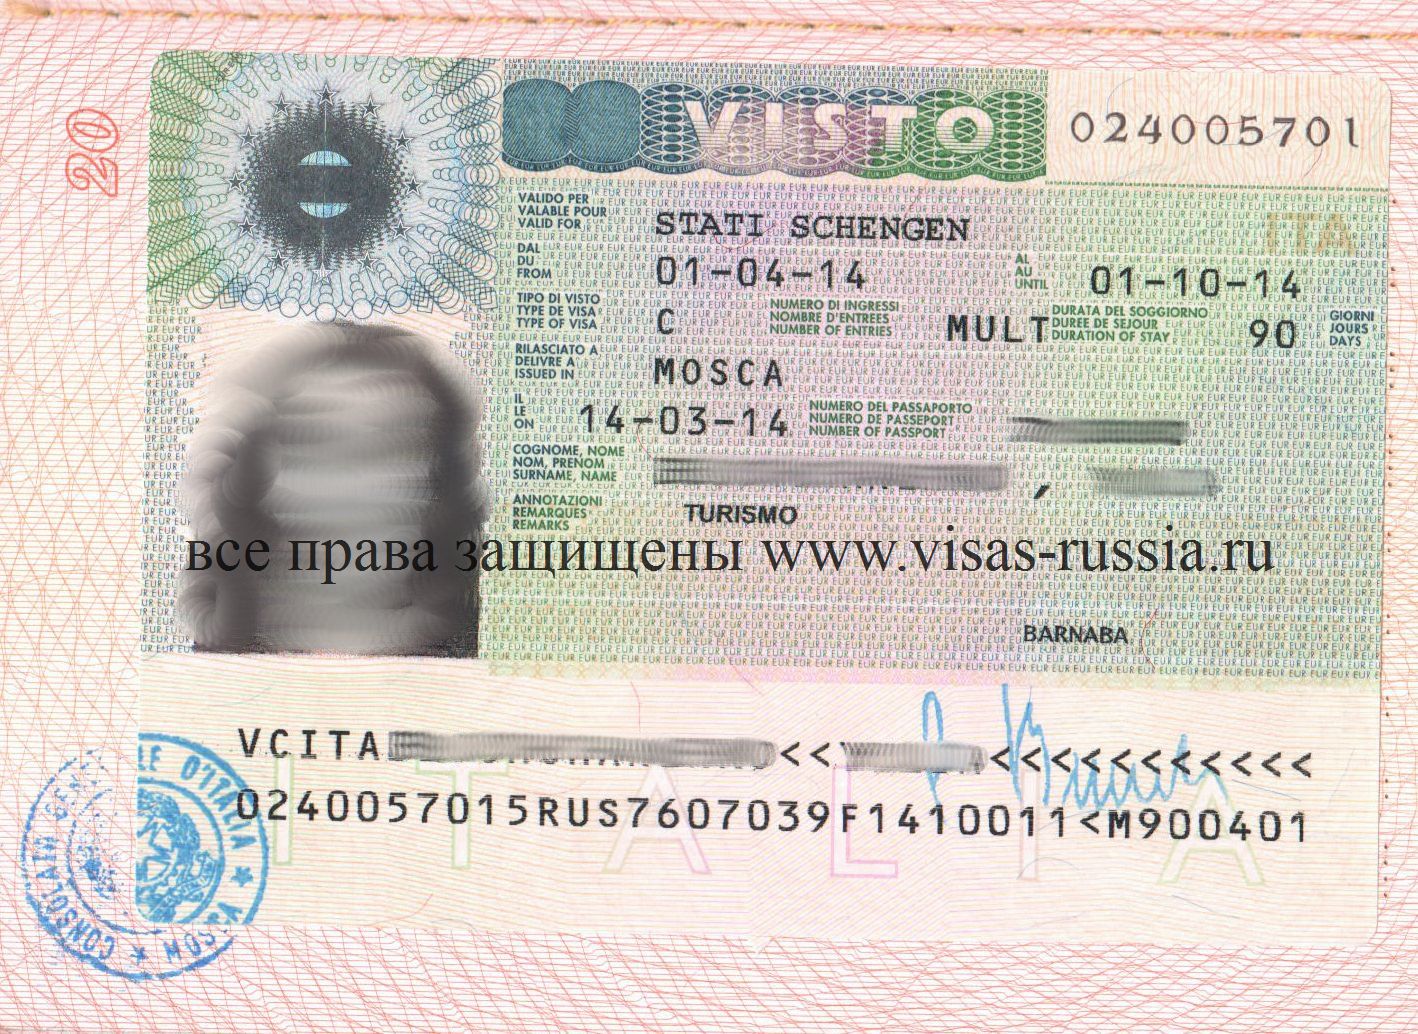 Виза на мальту: нужна ли для россиян, как получить самостоятельно, документы, анкета и стоимость оформления